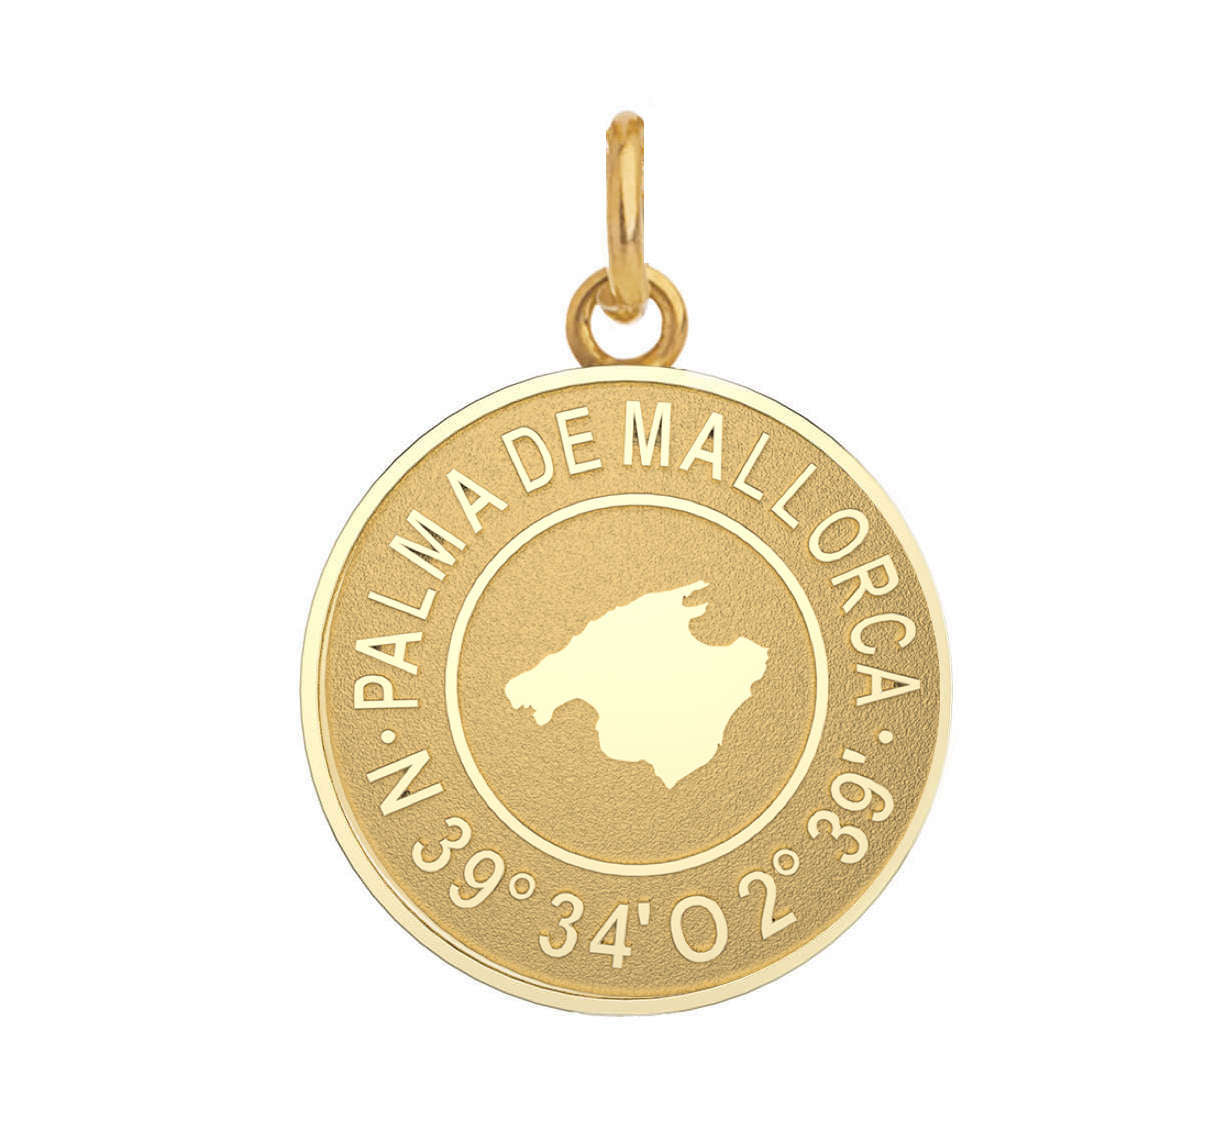 Goldmünzenanhänger „Palma de Mallorca“.